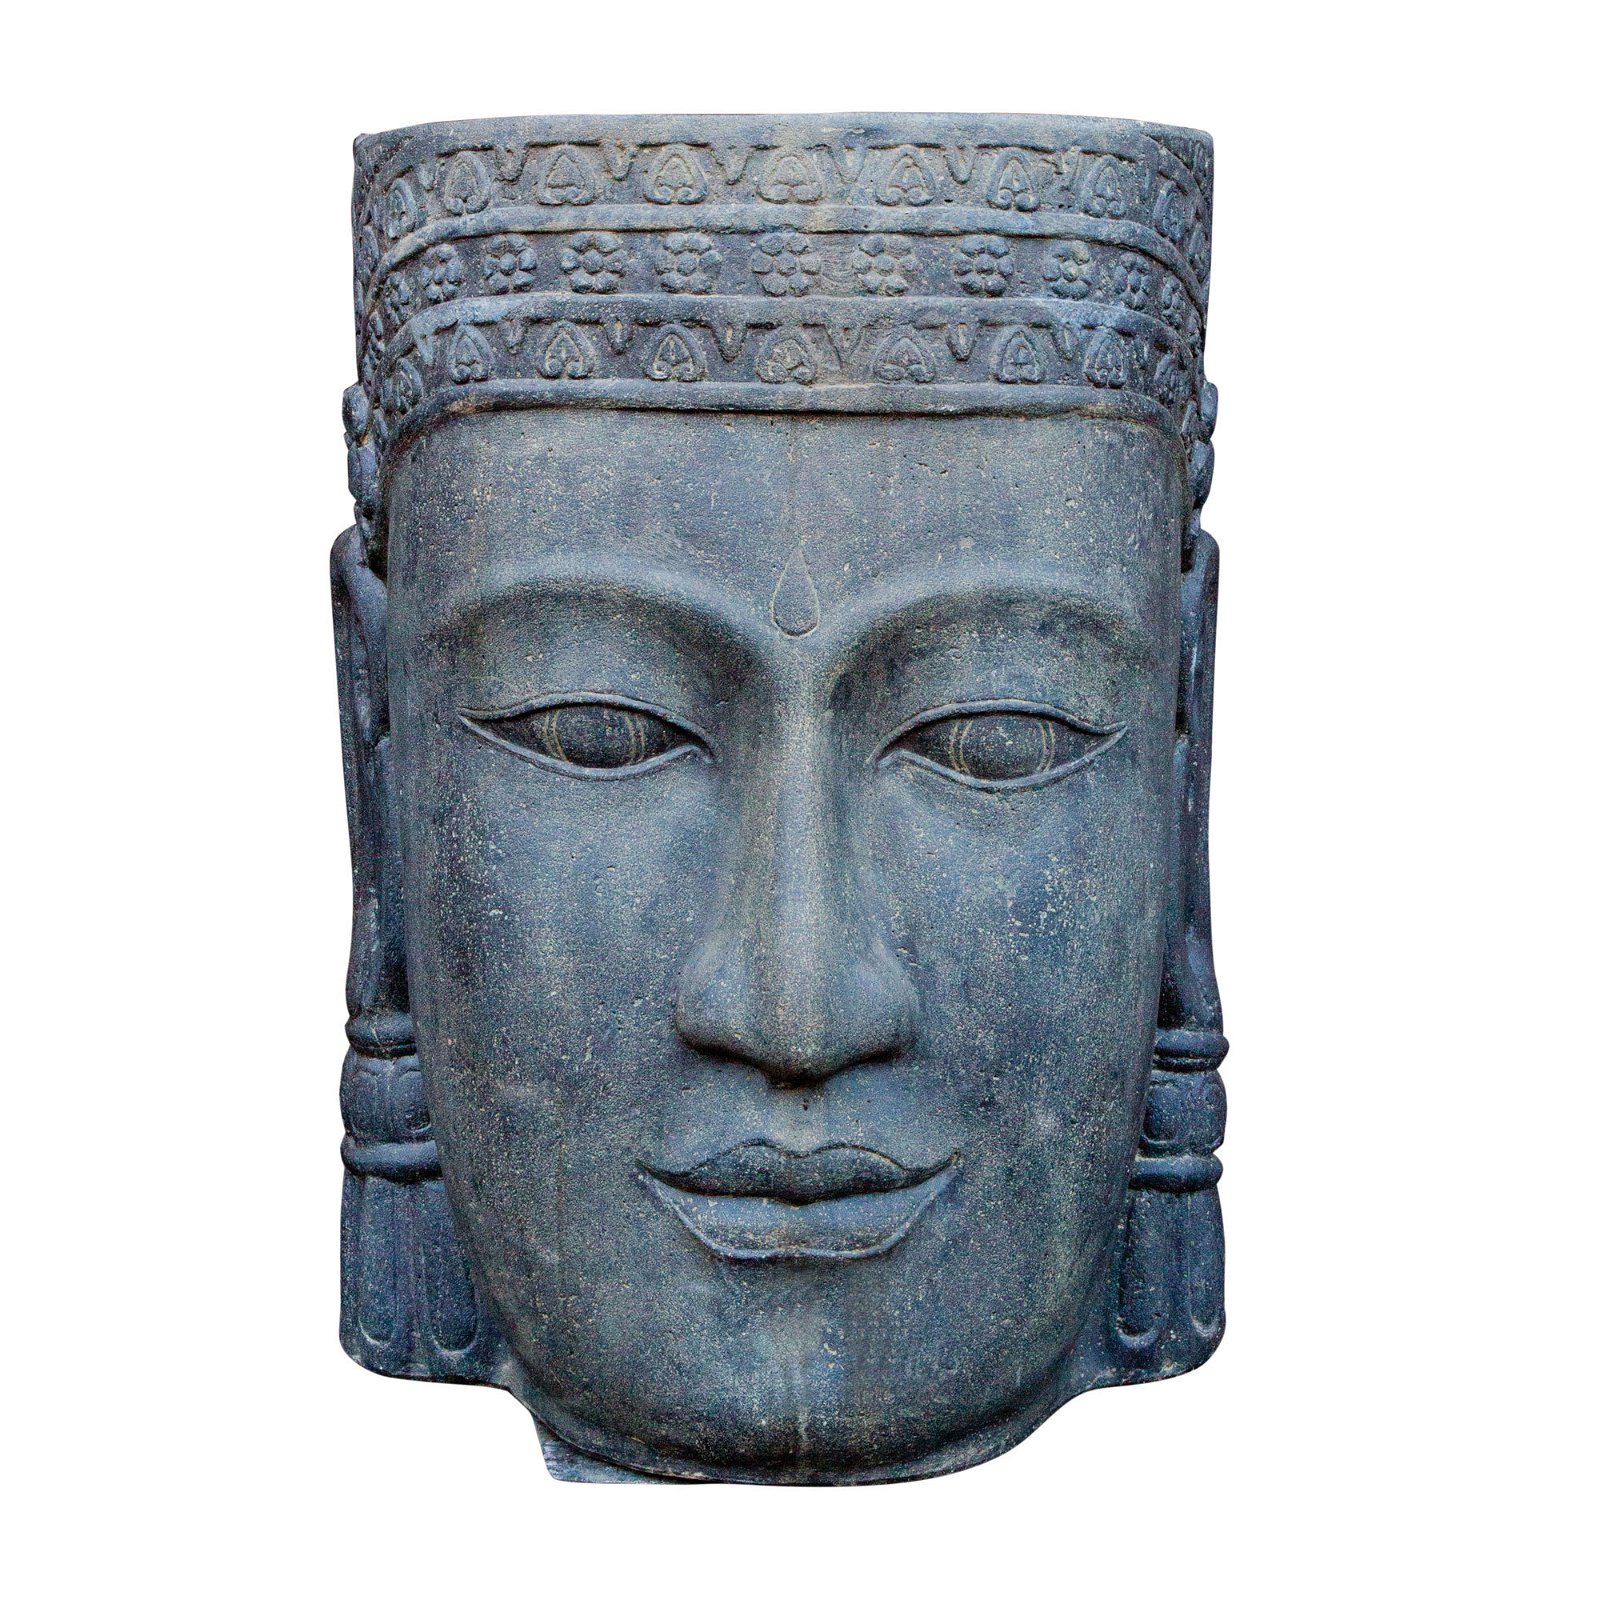 Khmer-Kopf, Größe M, antikfinish Steinguss, 84 x 60 x 40 cm